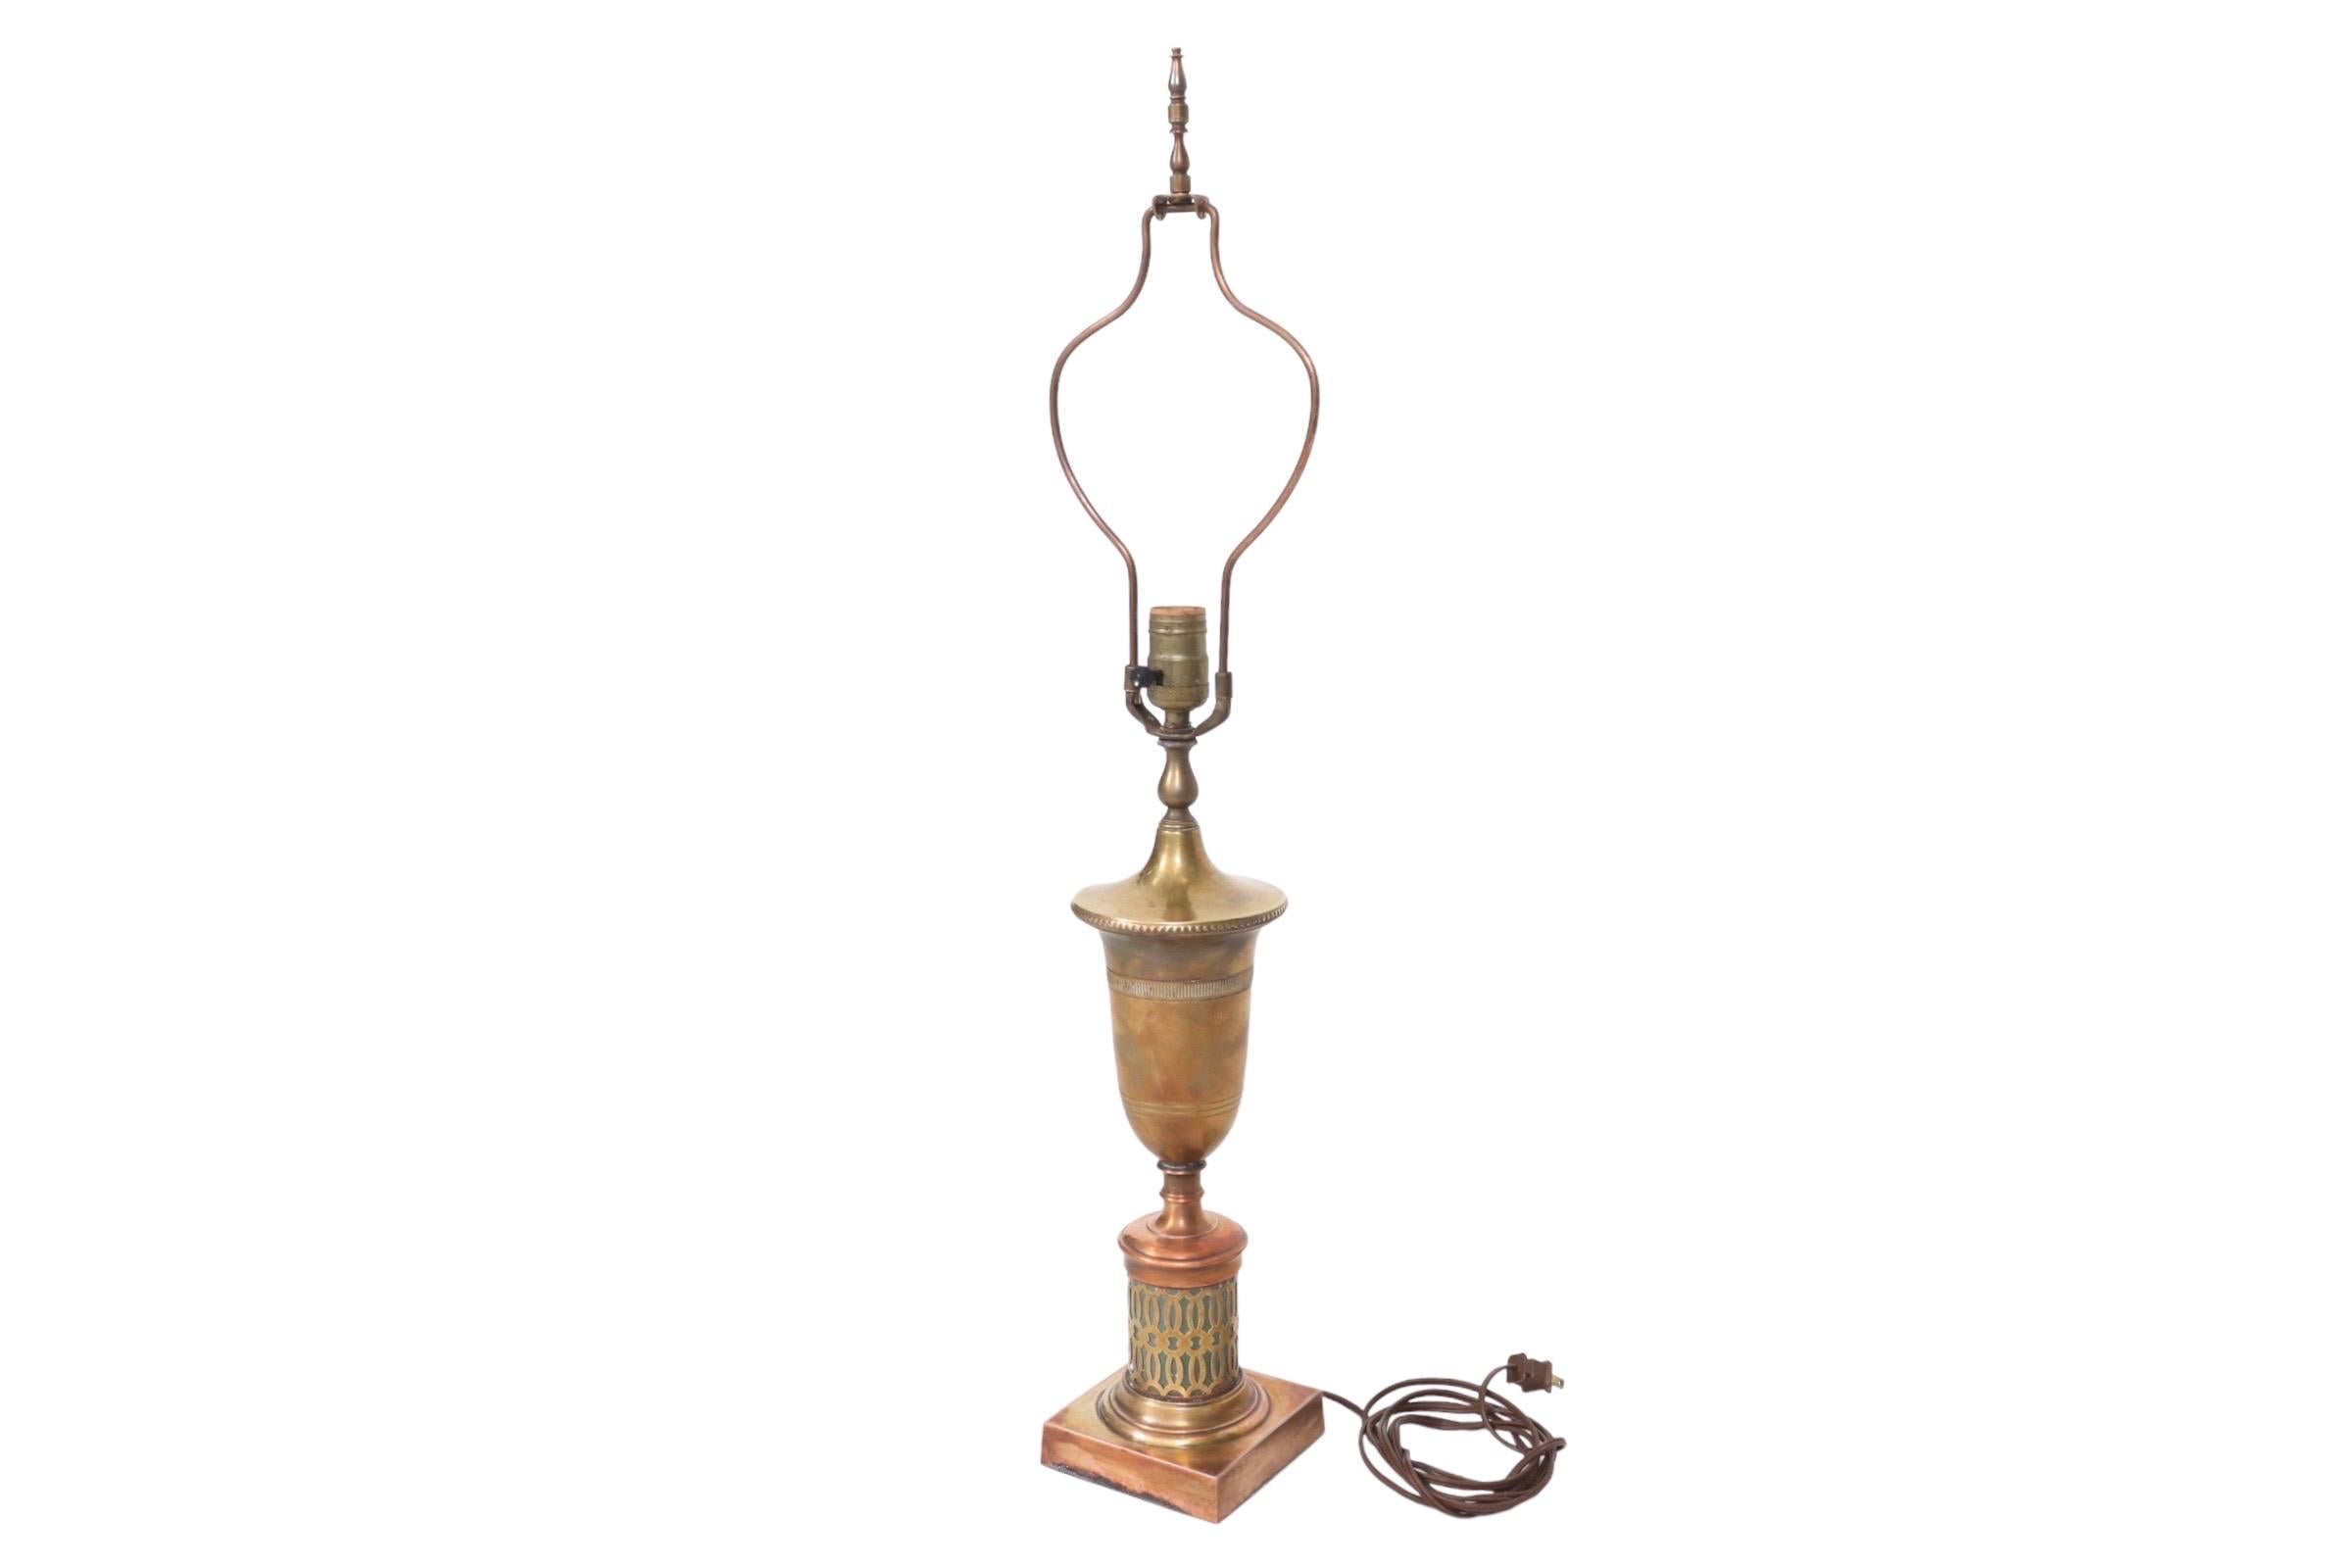 Une lampe de table de style indien faite de cuivre et de laiton. Une harpe inhabituelle en forme de balustre avec un grand fleuron tourné, au-dessus d'un vase en laiton simplement décoré. En dessous, une base sarcelle à l'intérieur d'un treillis de